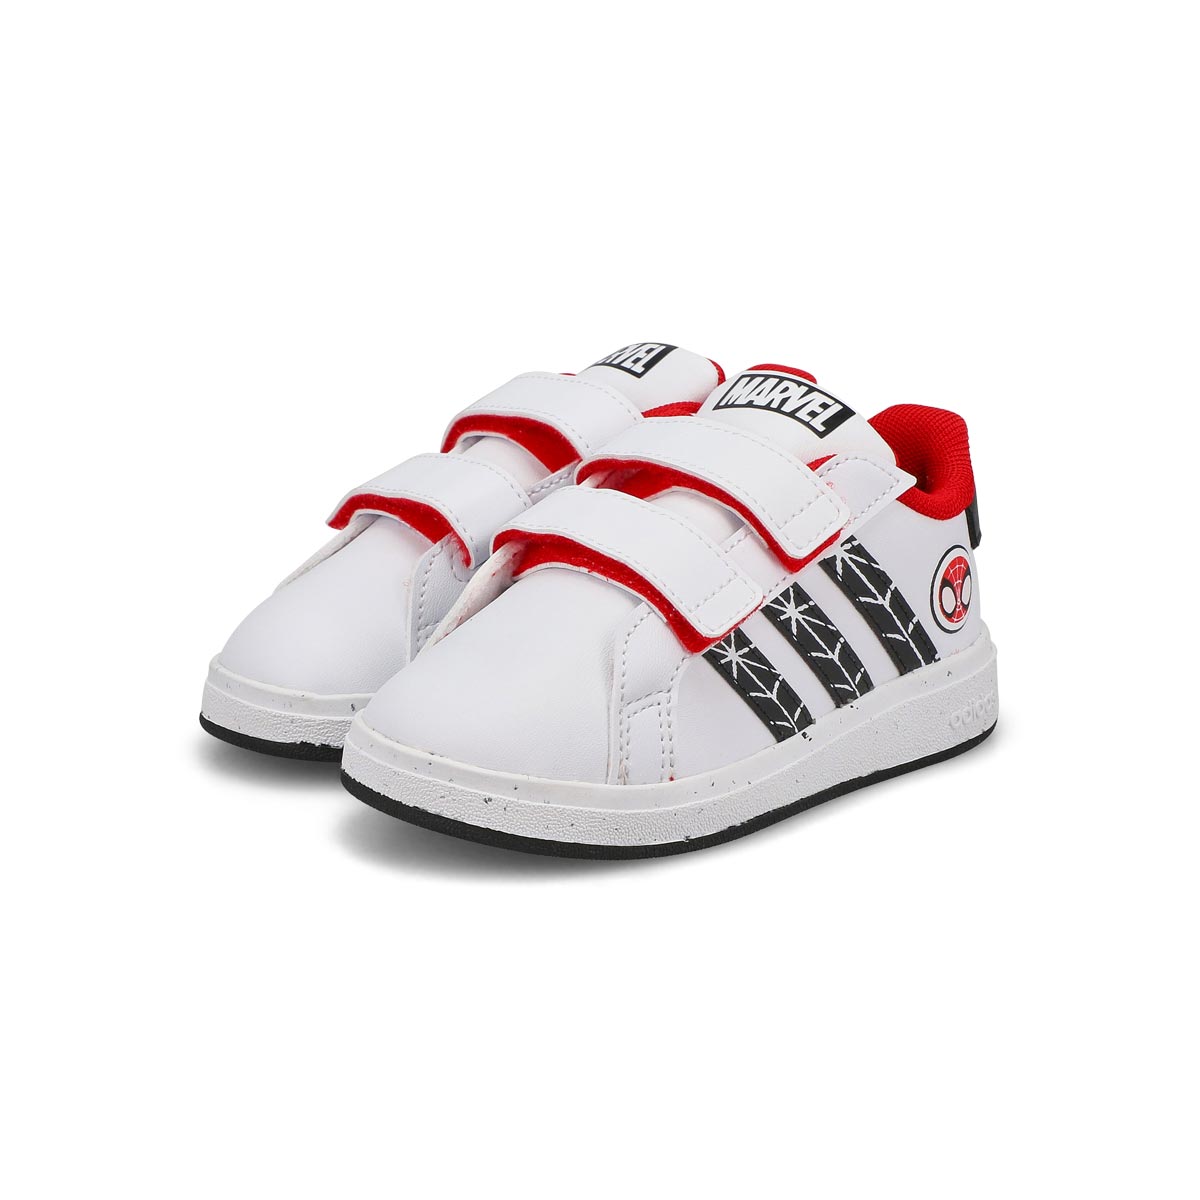 Infants' Grand Court Spiderman Sneaker - White/Black/Red